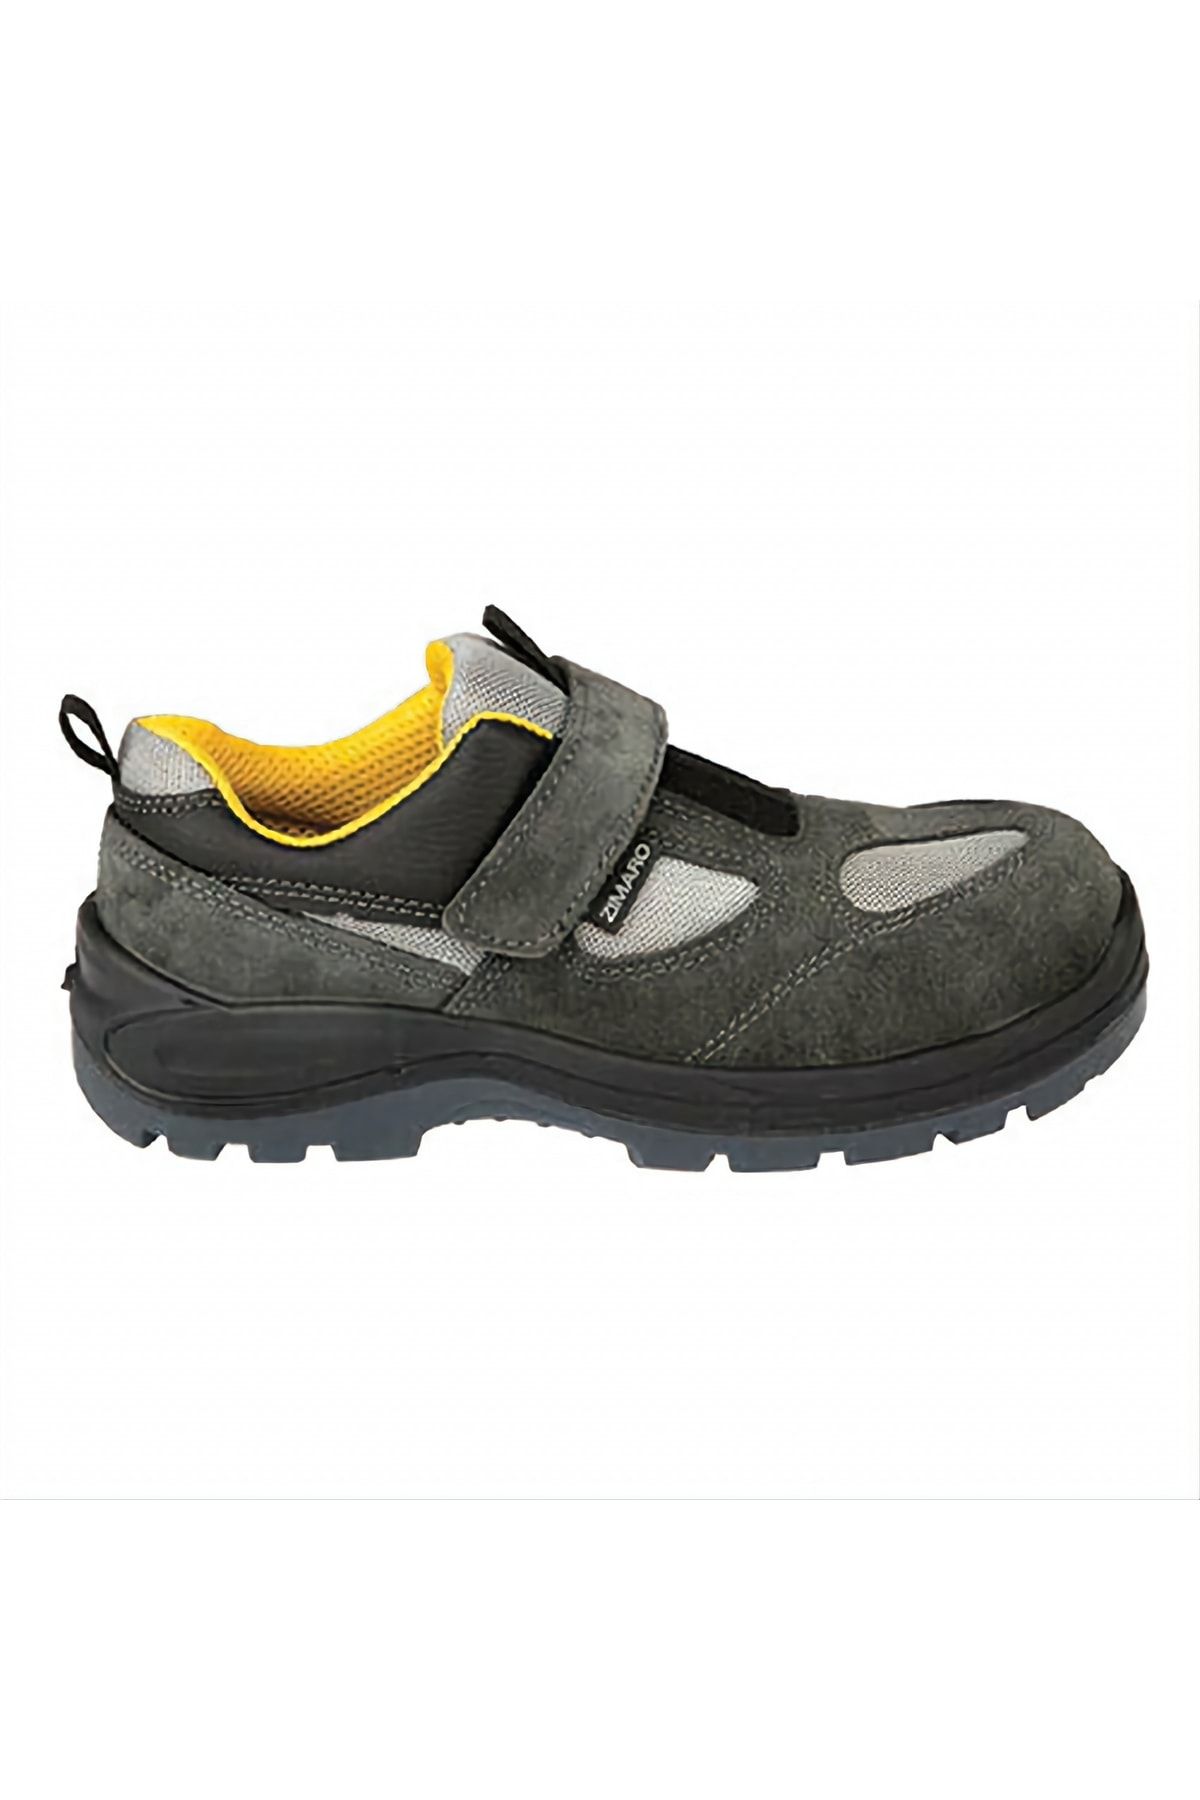 Zimaro Iş Güvenliği Ayakkabısı (celik Burun, Kaymaz Taban) Z1.0 S1